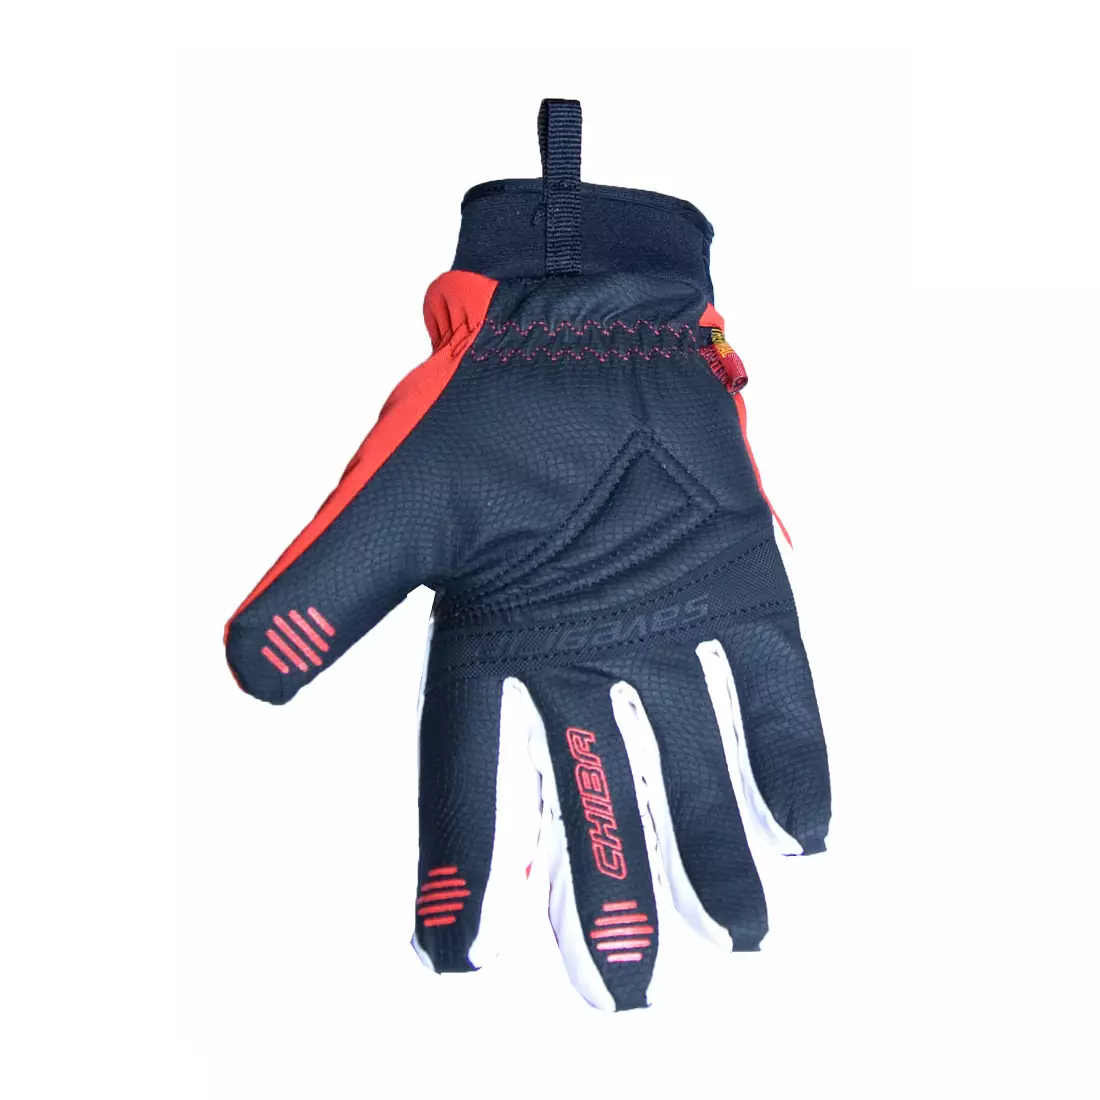 CHIBA women's winter gloves LADY WATERPROOF